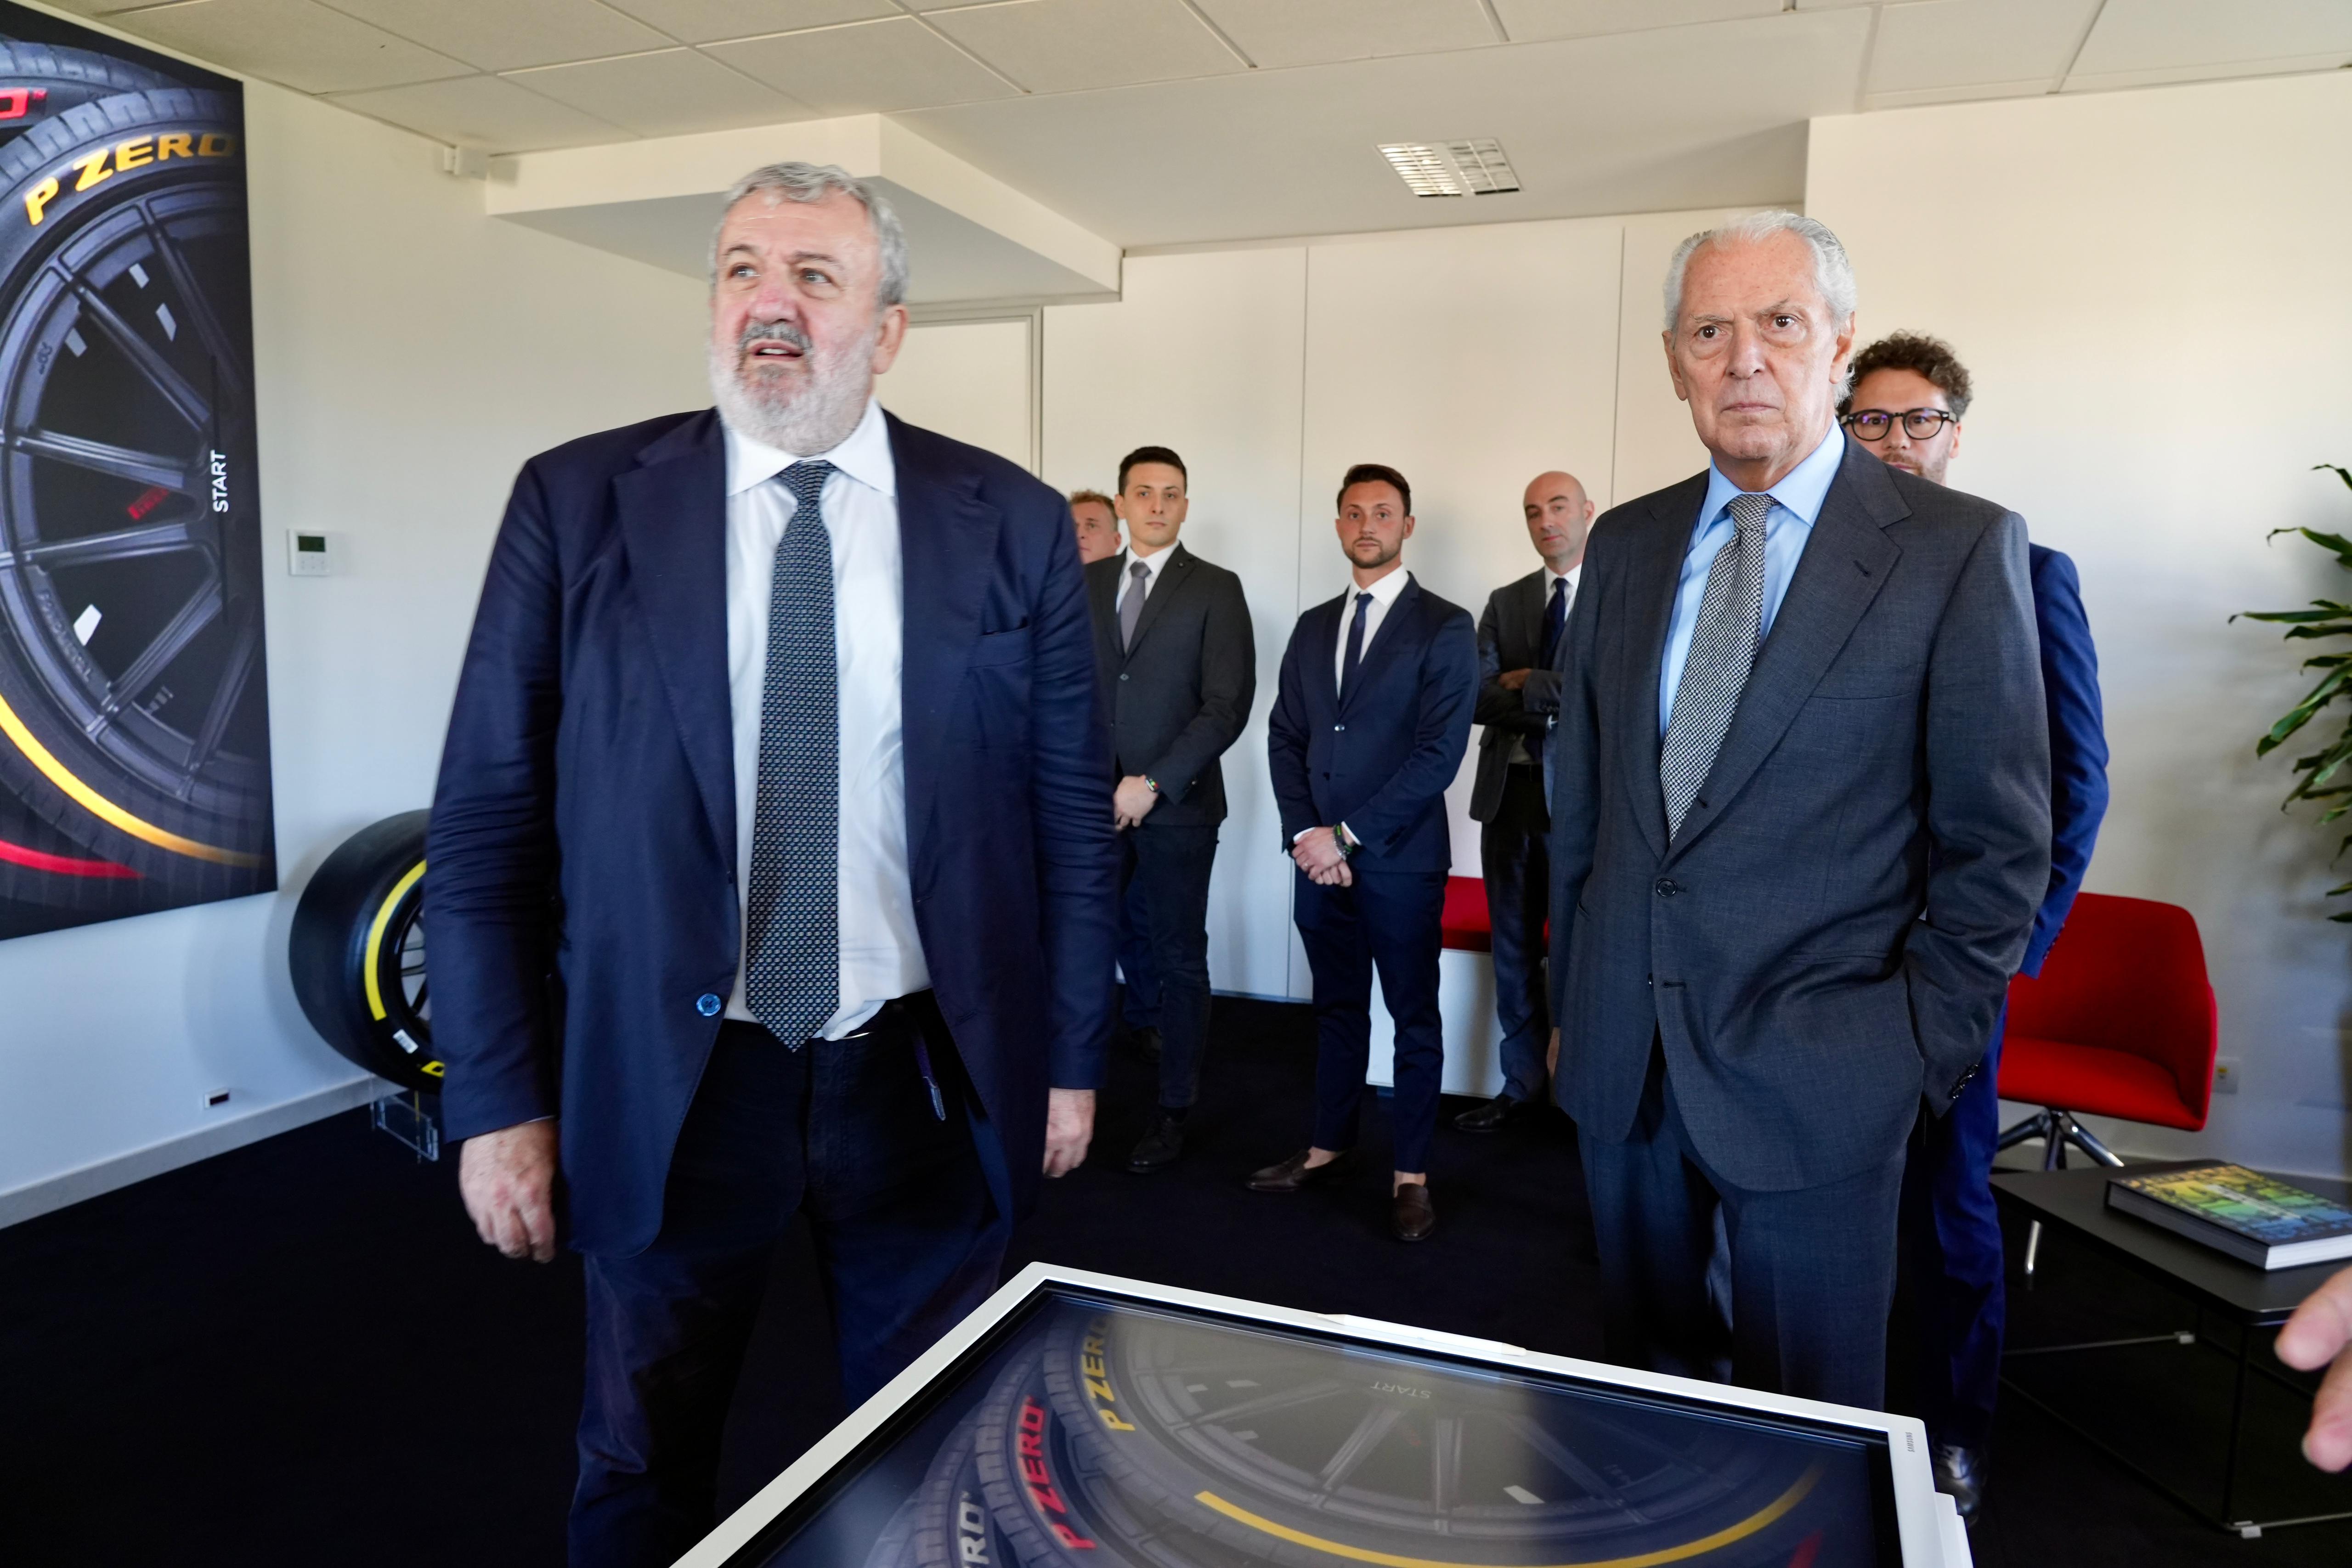 Galleria Pirelli: si rafforza a Bari, nel 2025 i dipendenti del Digital Solutions Center saliranno a 80 dai 50 previsti inizialmente - Diapositiva 6 di 13